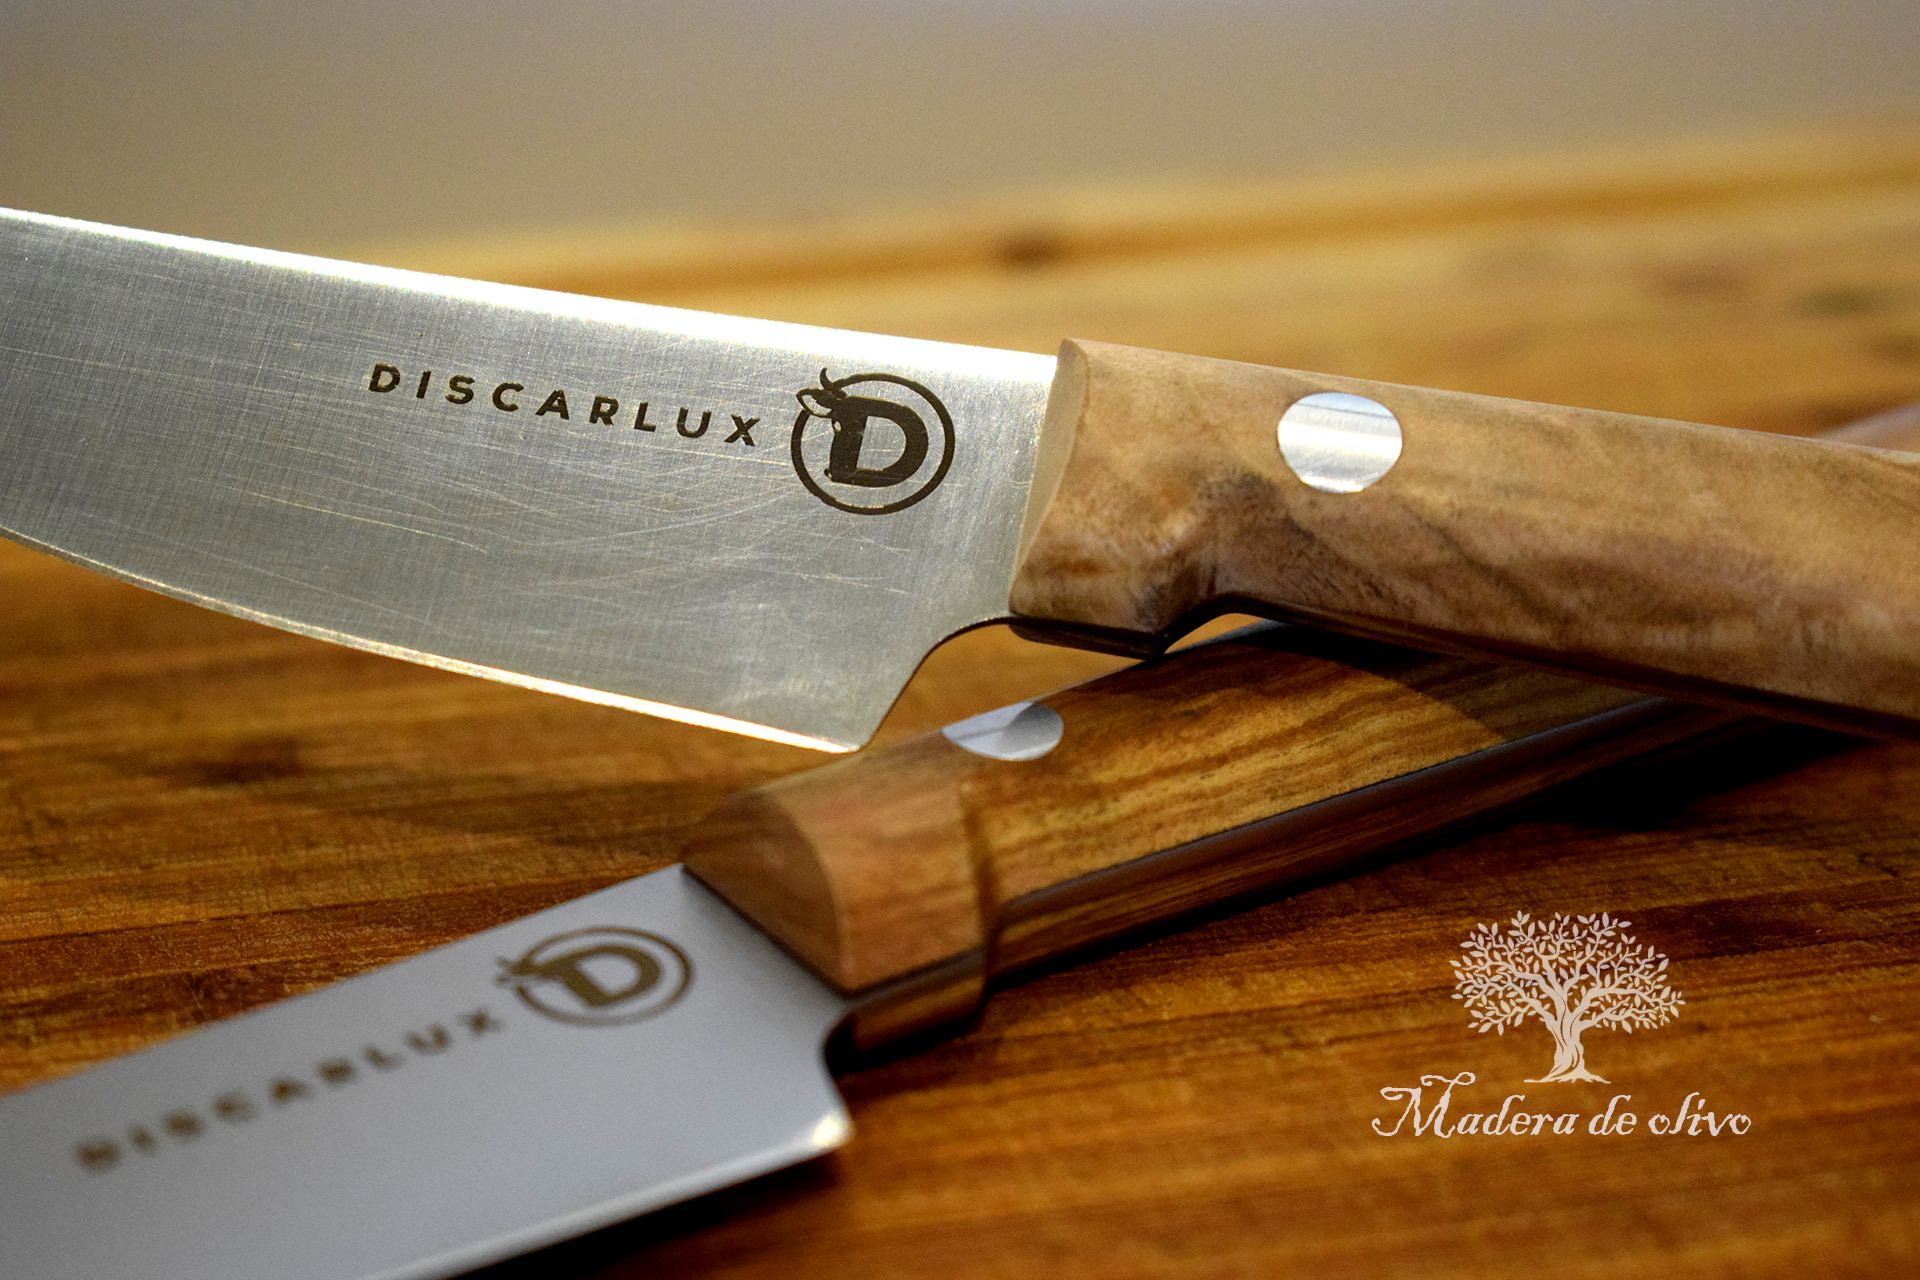 Cuchillo chuletero de madera de olivo - Discarlux